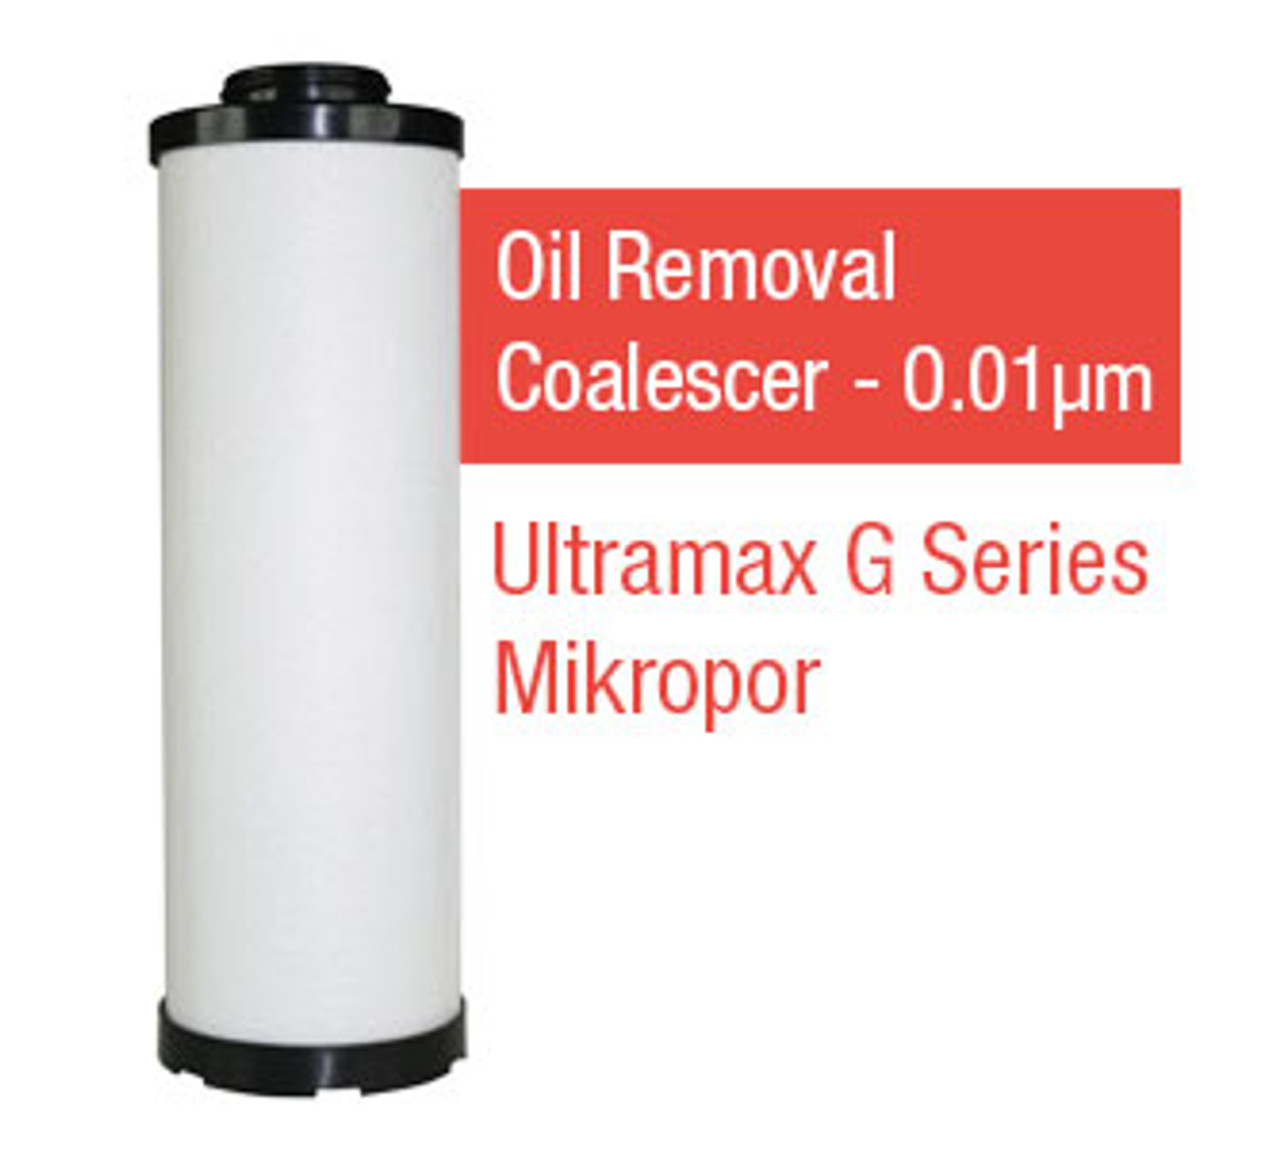 M300Y - Grade Y - Oil Removal Coalescer - 0.01 um (M300Y/G300MY)